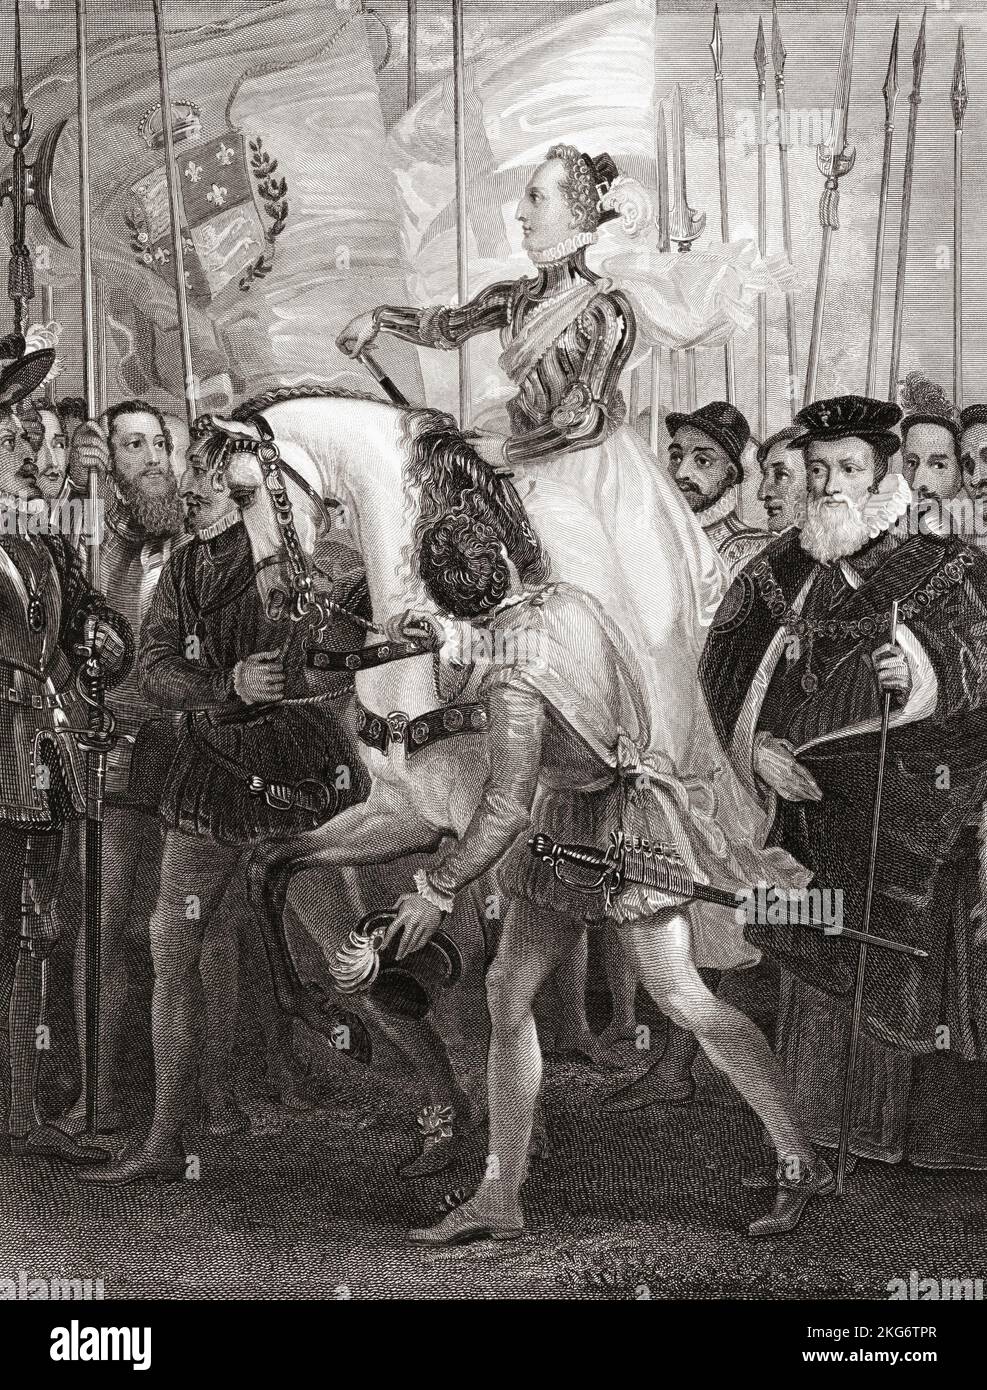 Elizabeth Ich inspiziere ihre Truppen im Tilbury Port, 1588, bevor ich sie übergebe: "Ich weiß, dass ich den Körper habe, aber eine schwache, schwache Frau; aber ich habe das Herz und den Bauch eines Königs", Rede. Ihre Armee wurde versammelt, um eine erwartete spanische Invasion abzuwehren. Elizabeth I., aka The Virgin Queen, Gloriana or Good Queen Bess, 1533 – 1603. Königin von England und Irland. Aus einem Druck von James Parker nach dem Gemälde von Thomas Stothard. Stockfoto